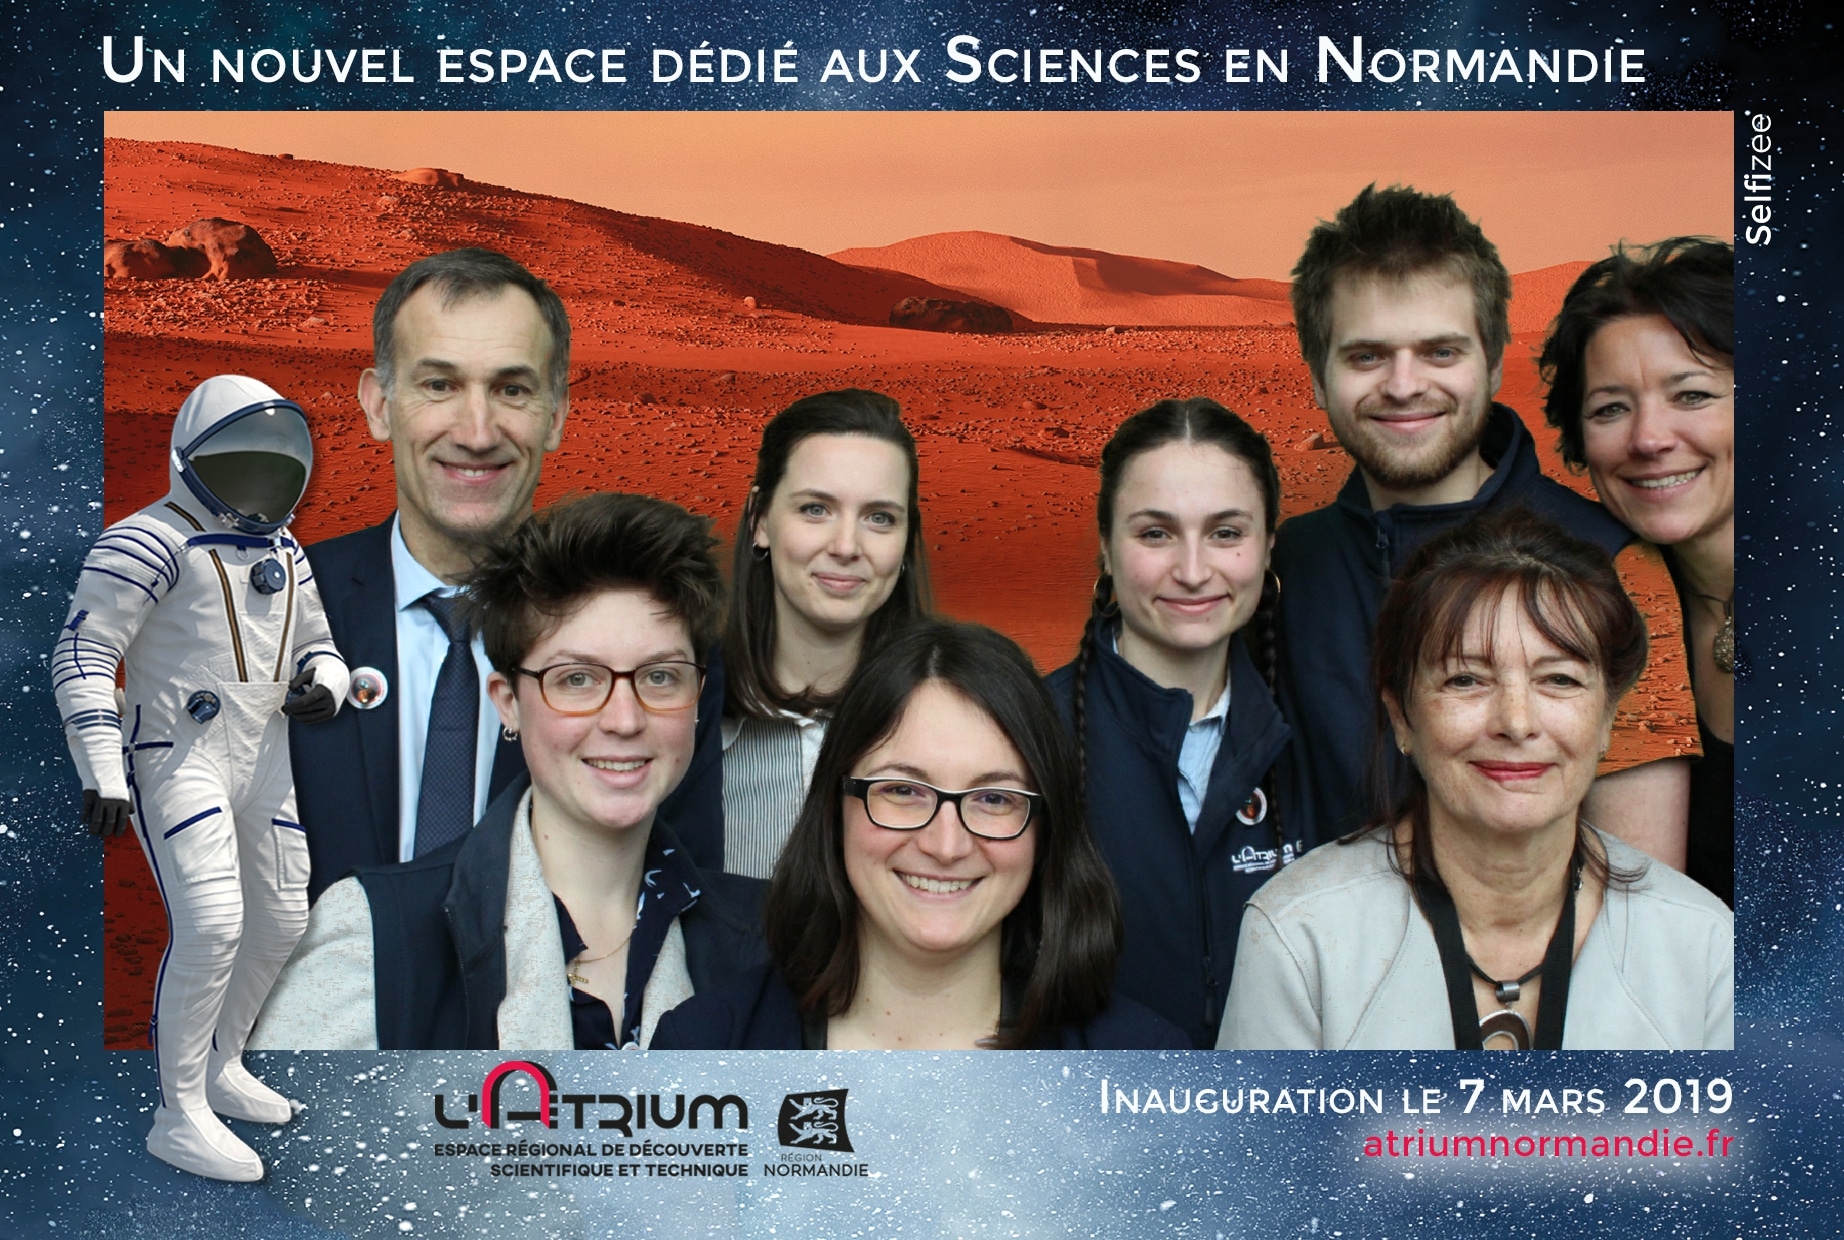 Borne selfie et animation fond vert pour soirée inauguration nouvel espace au L'Atrium Normandie à Rouen